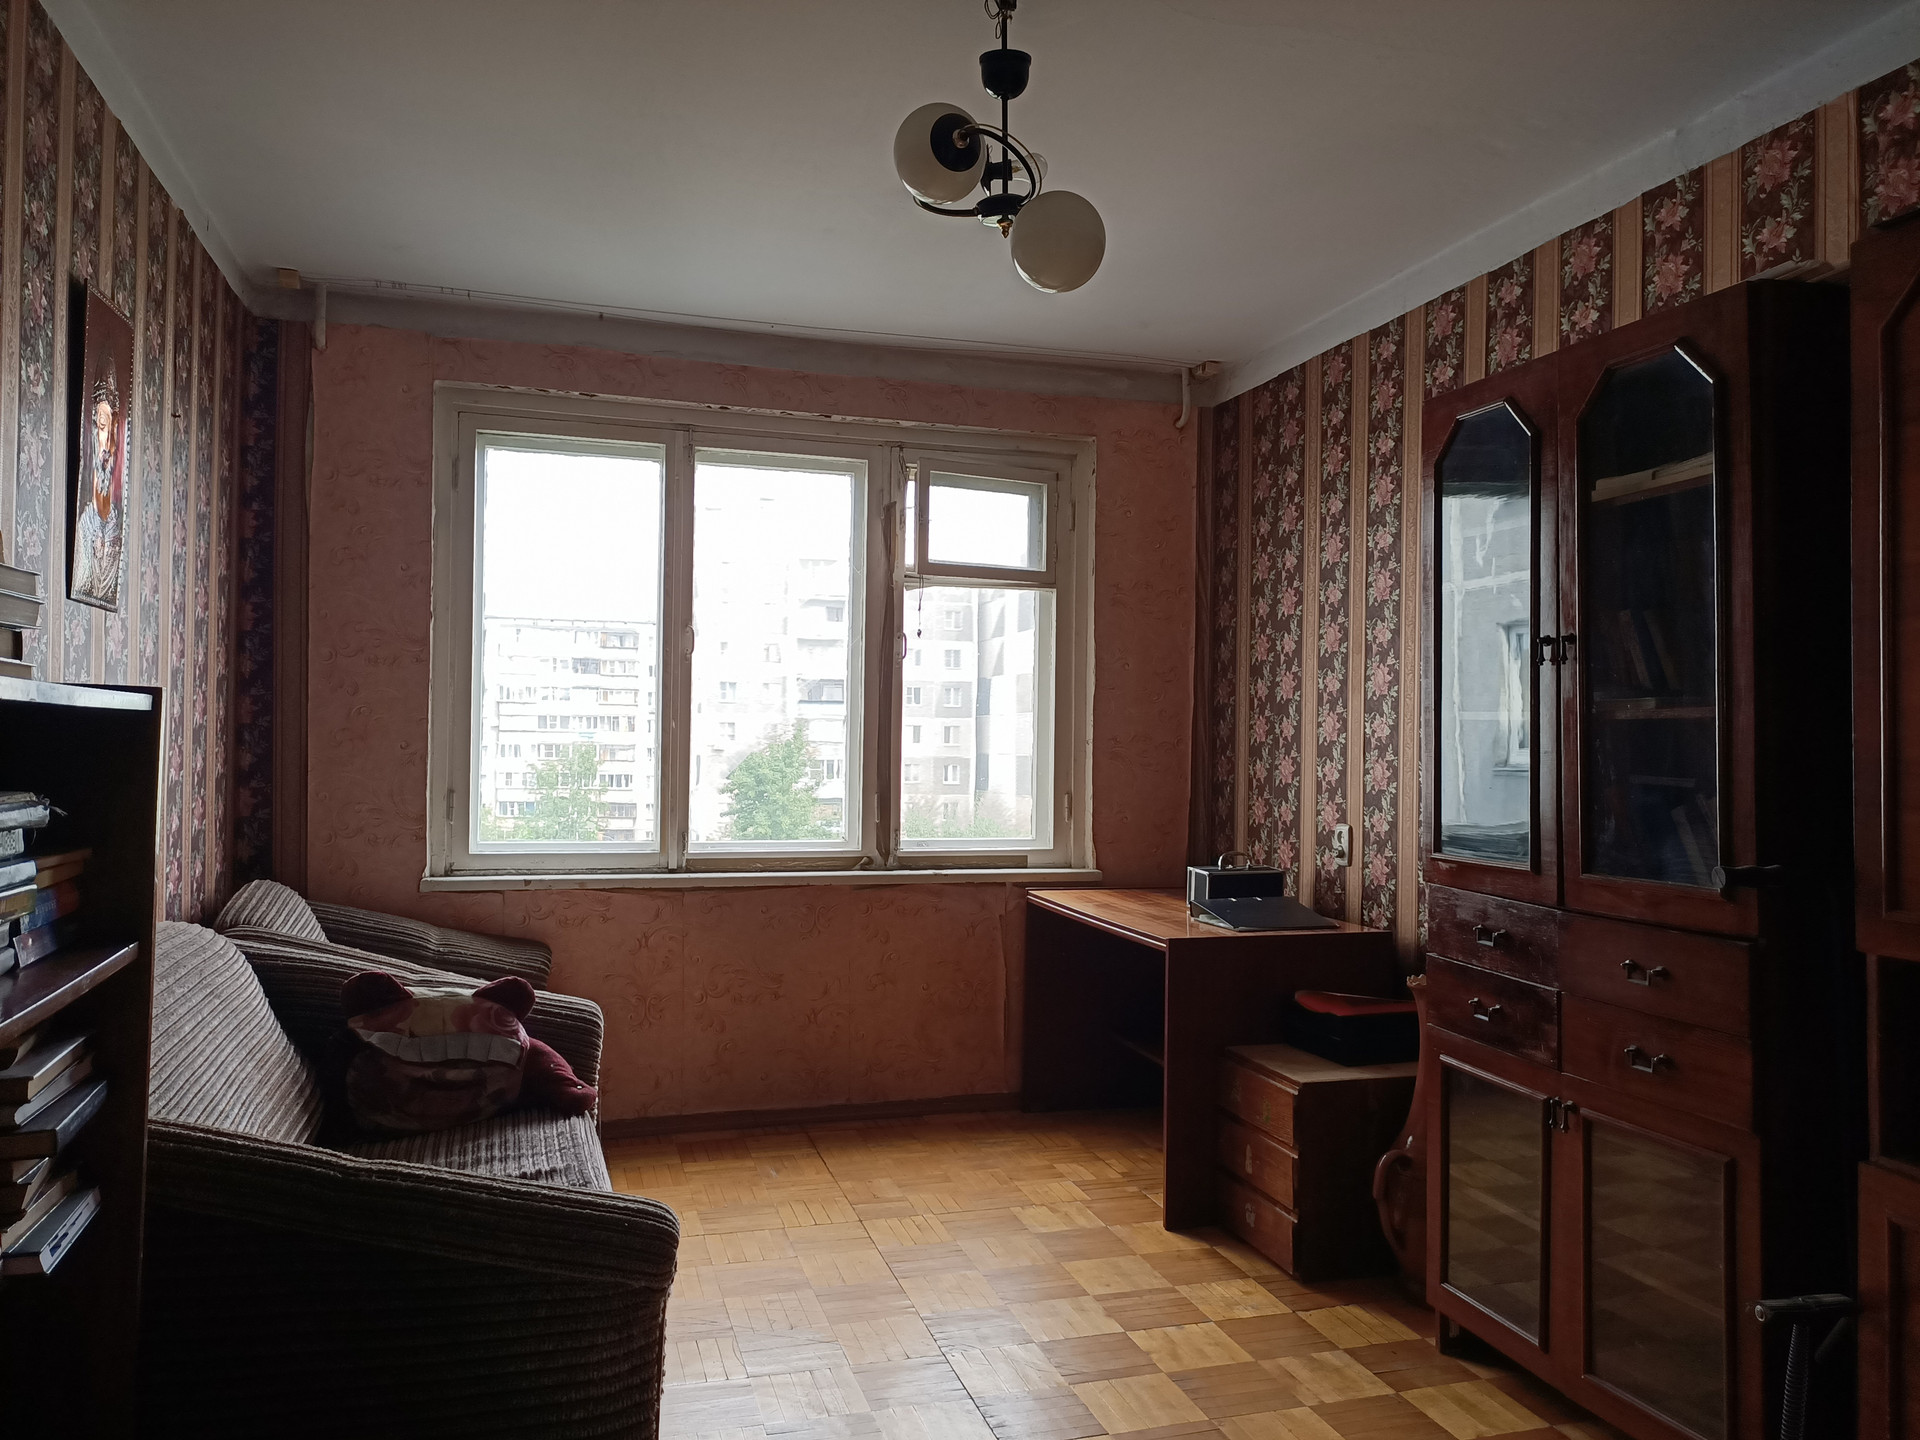 4 комнатная в челябинске. Комсомольский проспект 56а Челябинск купить квартиру.